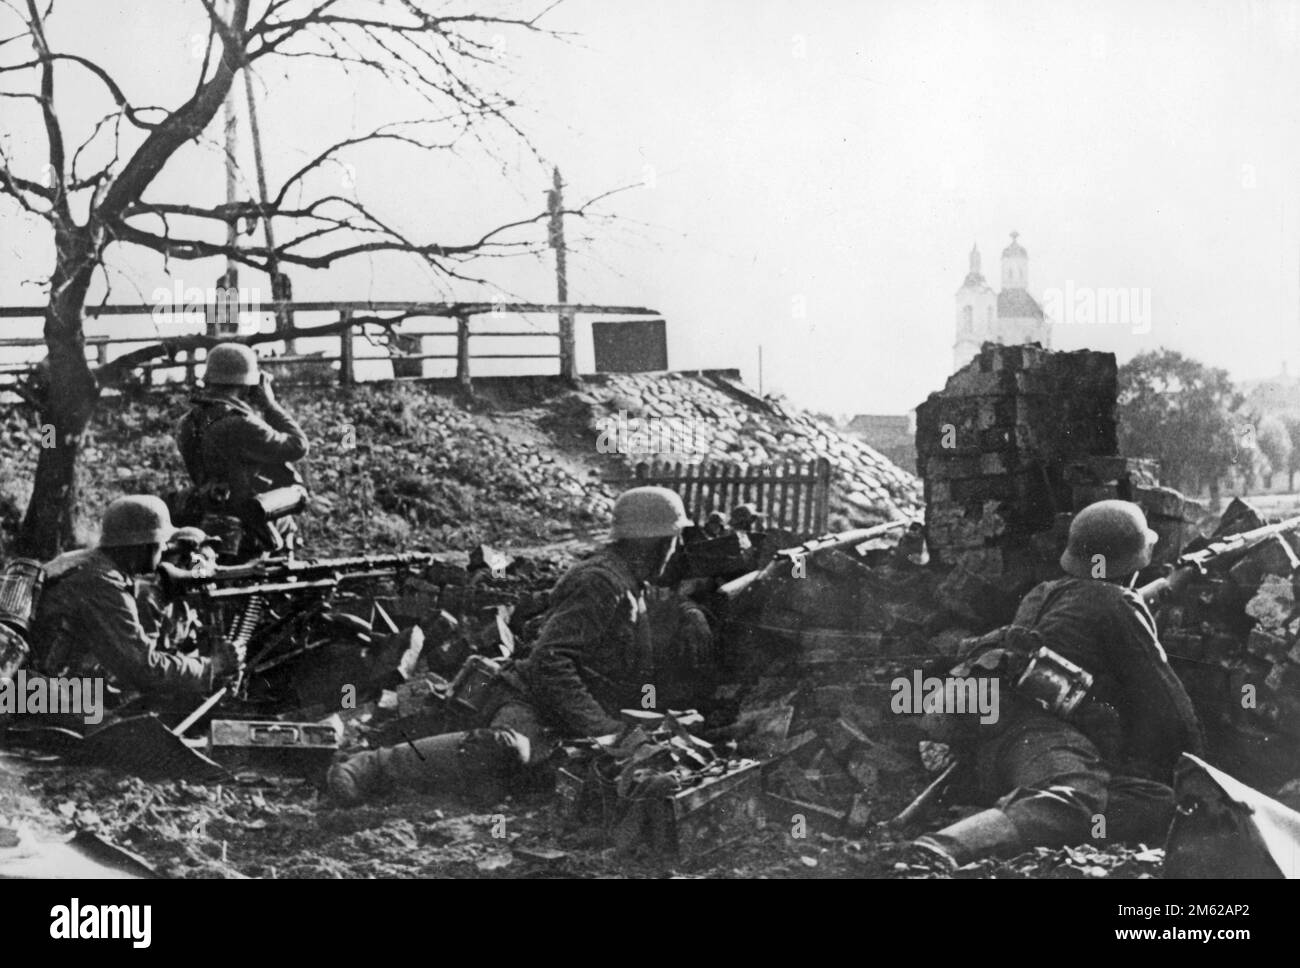 Position d'infanterie allemande avec MITRAILLEUSE MG-34 près de l'église pendant la bataille pour la ville de Velikie Luki dans le nord de la Russie pendant l'opération Barbarossa, l'invasion nazie de l'Union soviétique. Banque D'Images